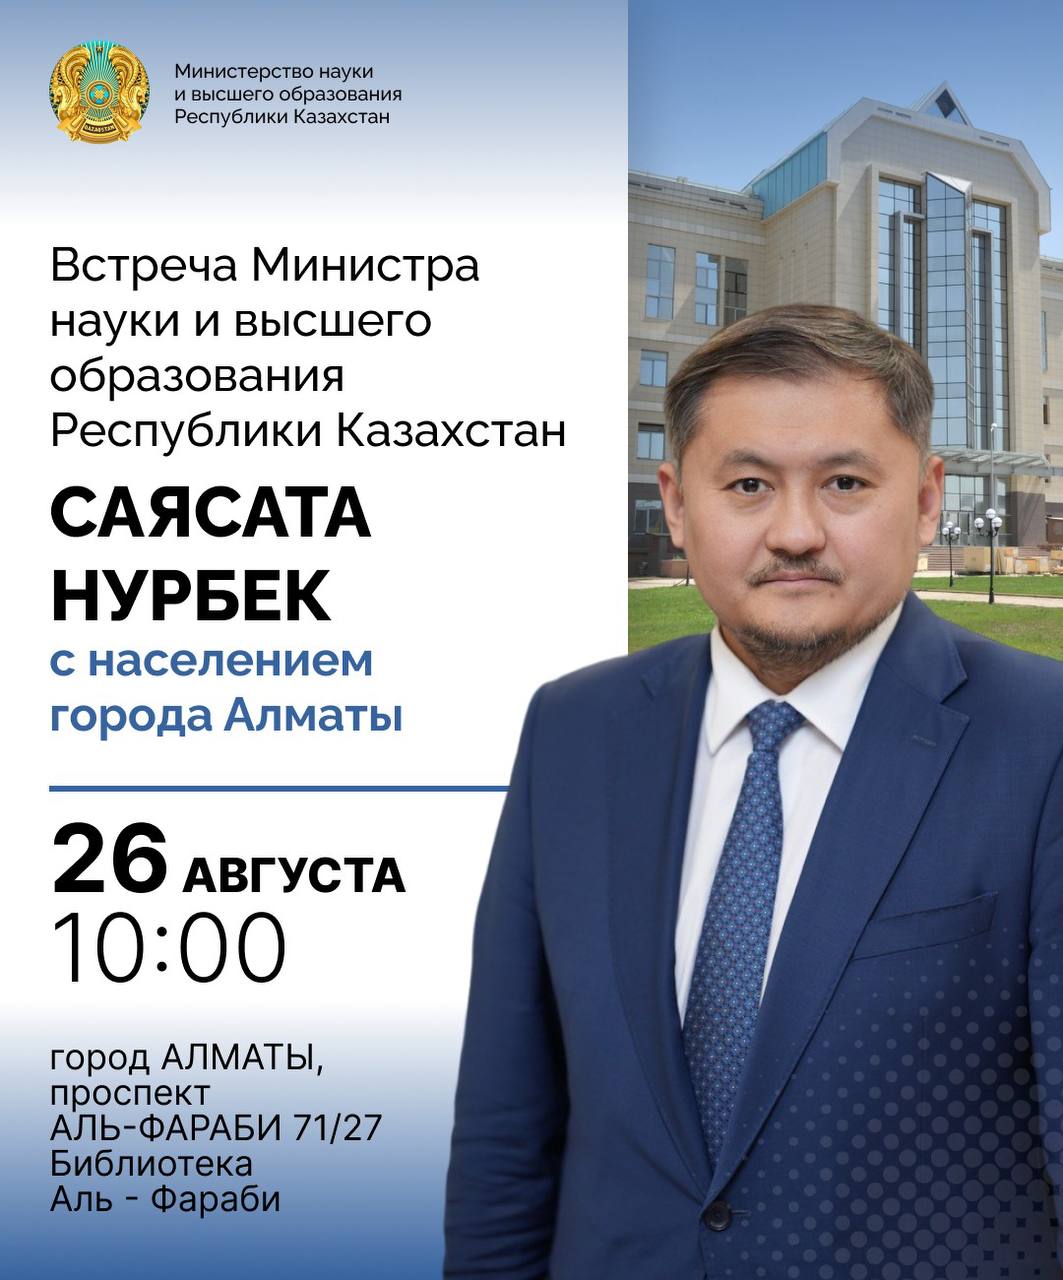 Встреча Министра науки и высшего образования Республики Казахстан Саясата Нурбек с населением города Алматы